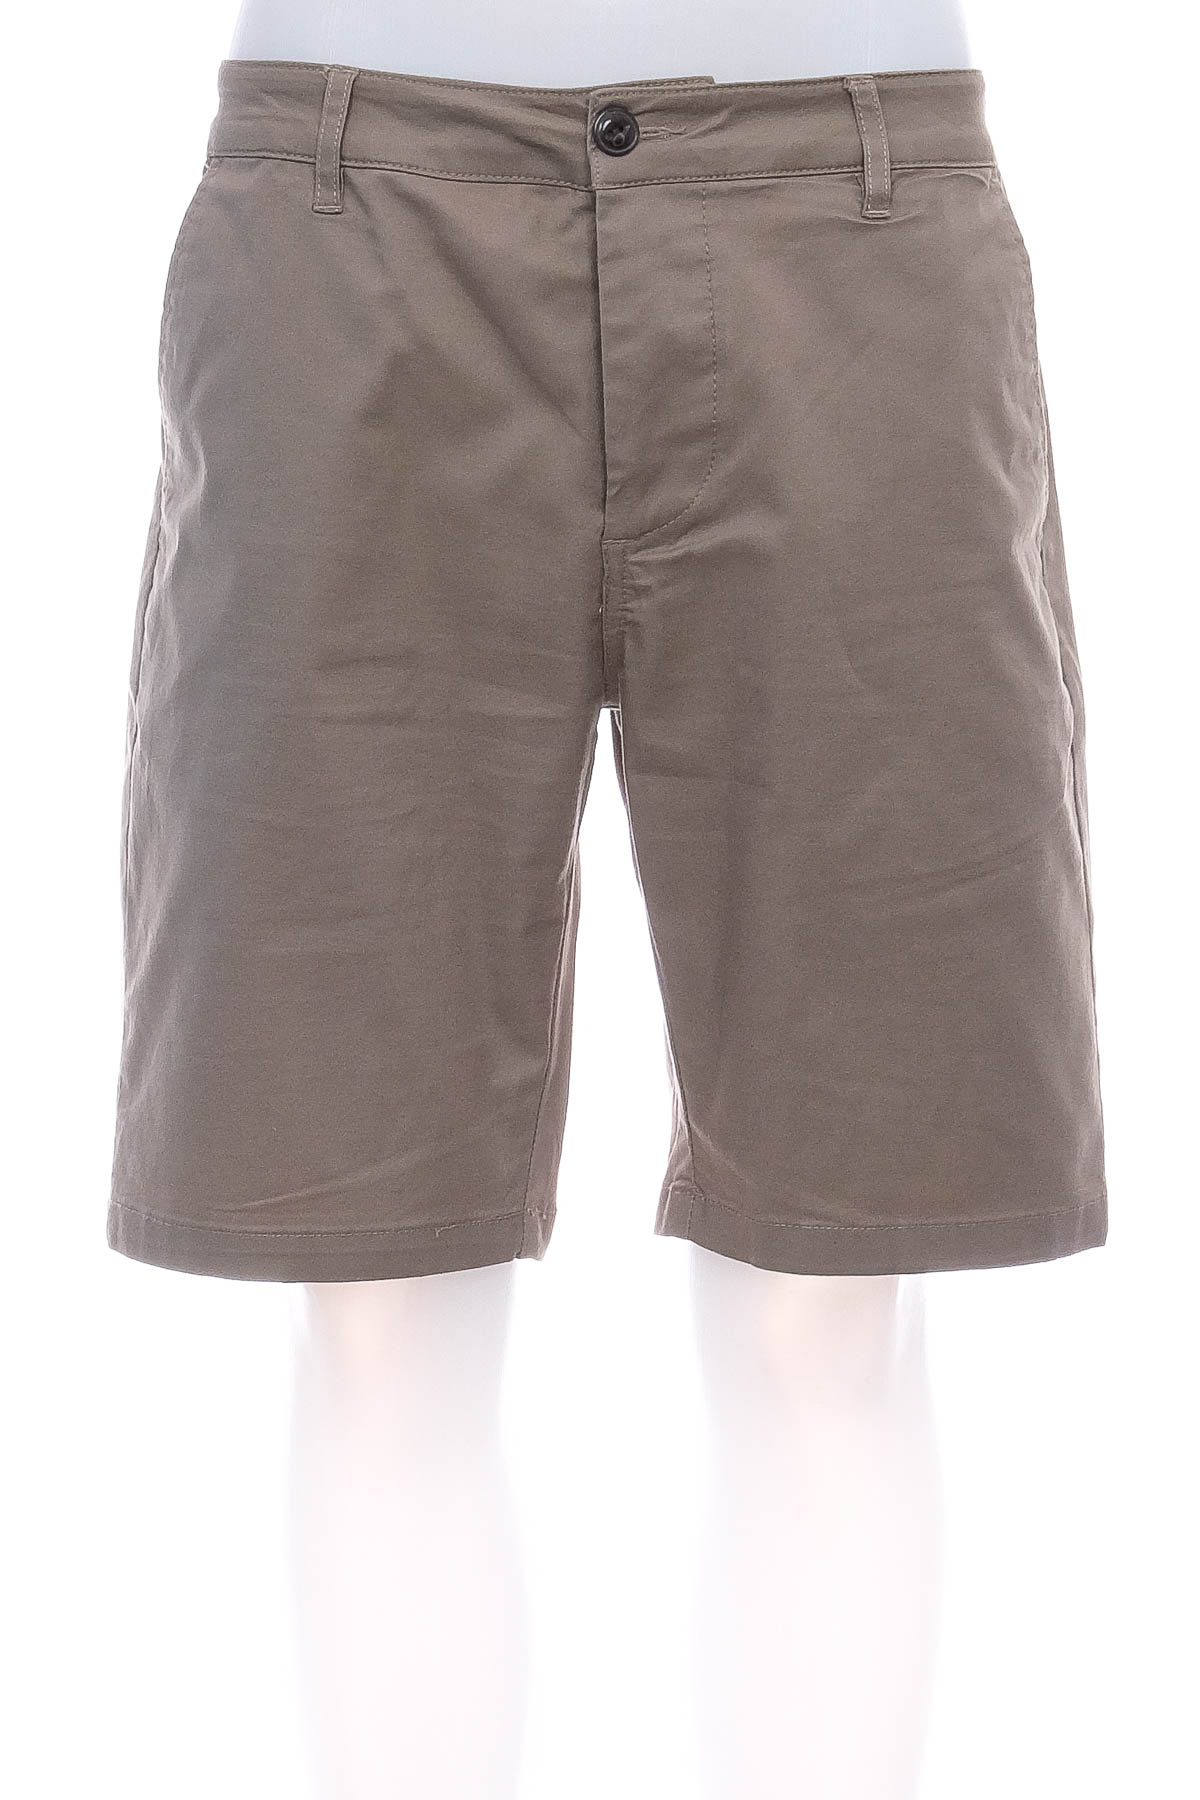 Men's shorts - Asos - 0